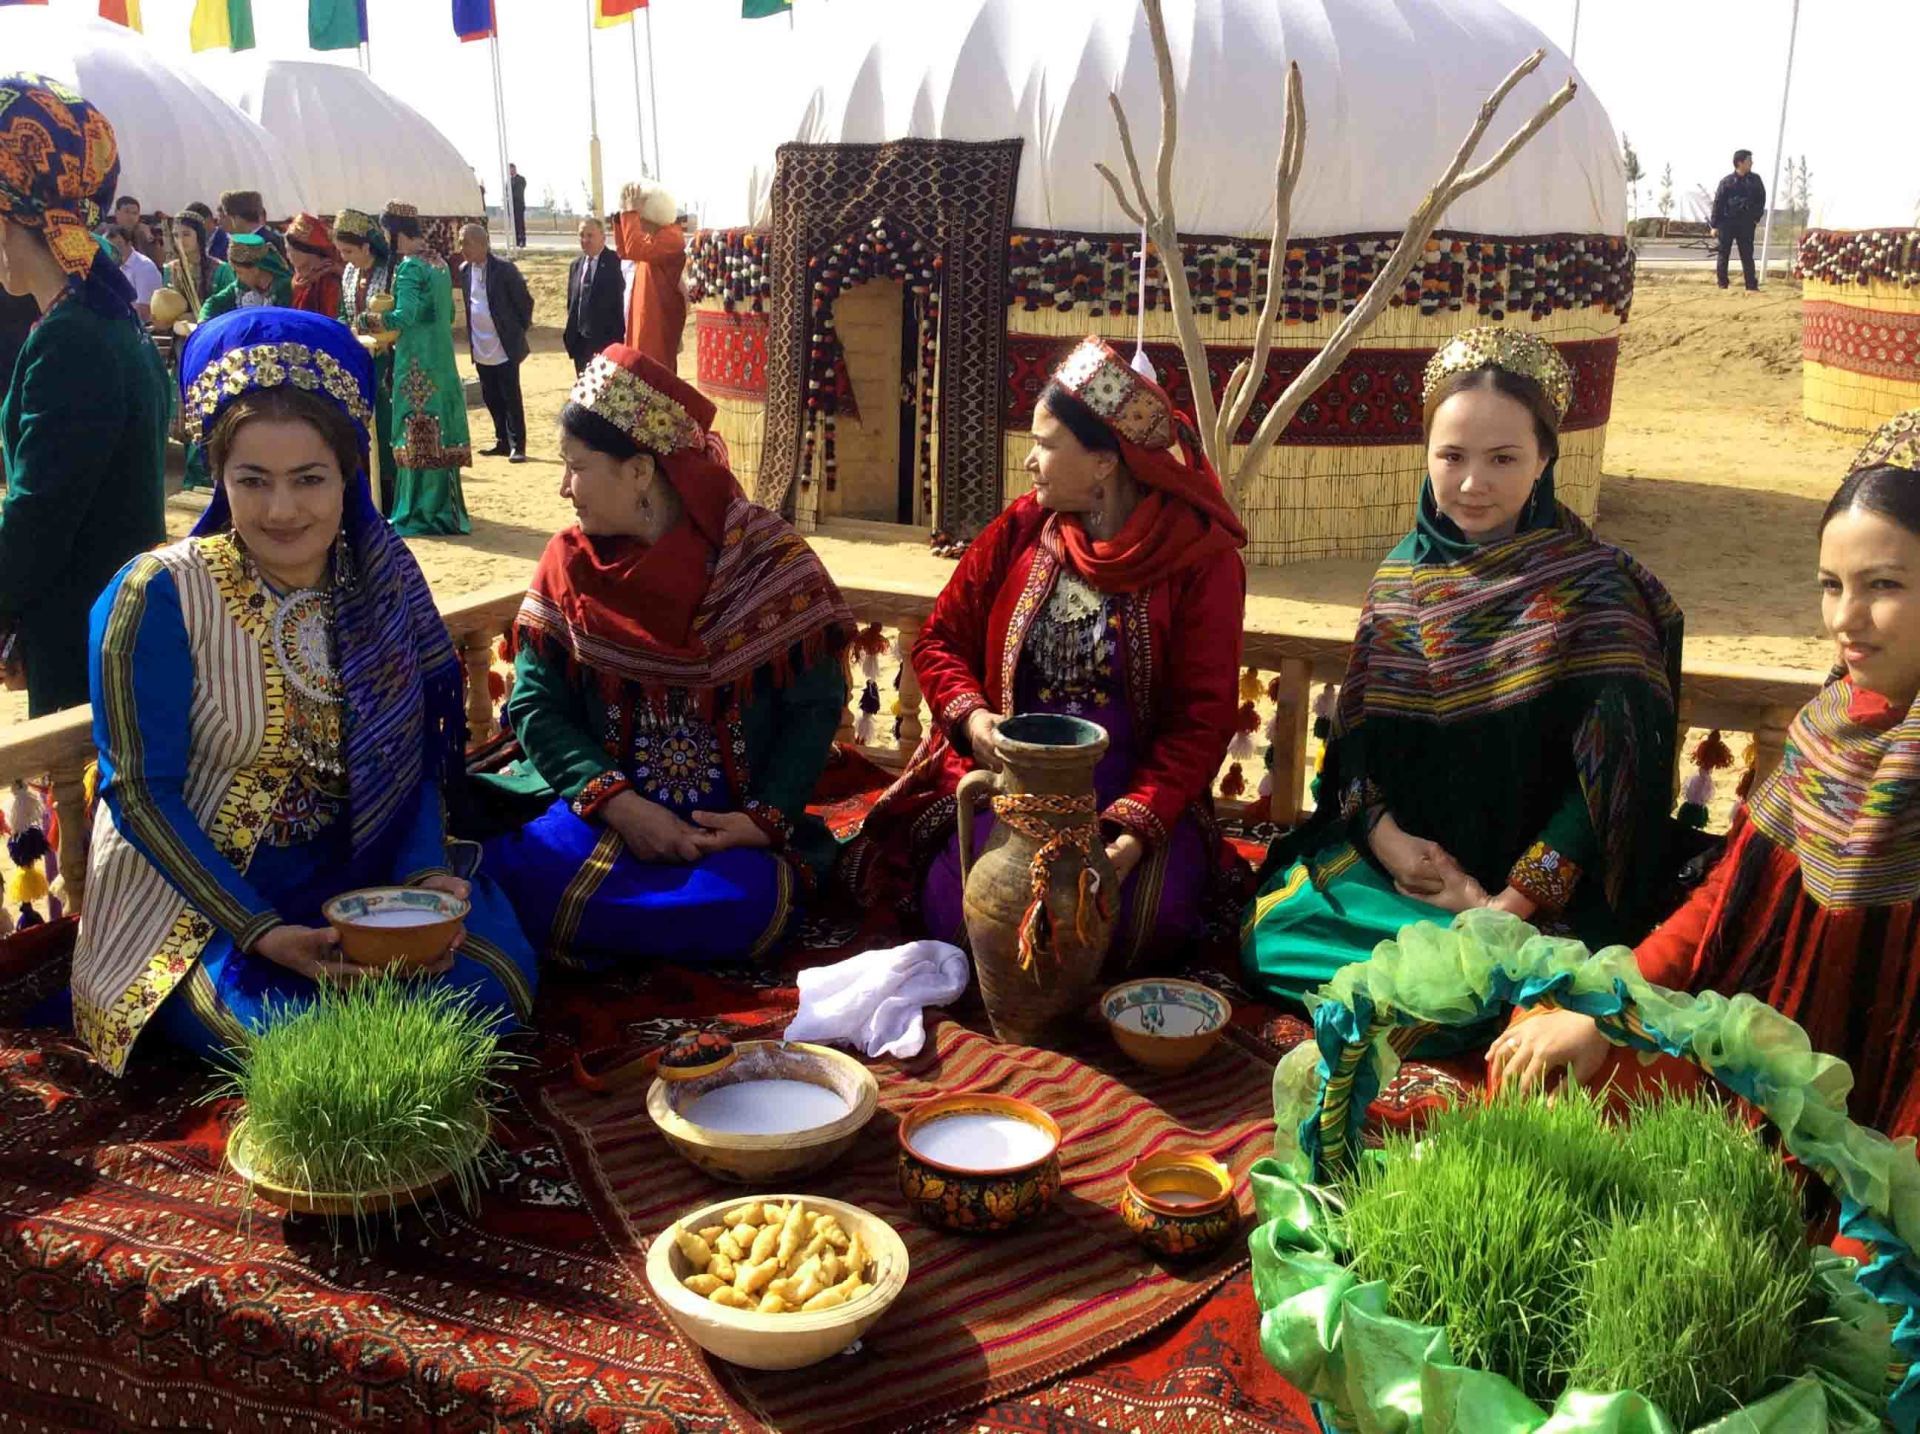 Tradition in Turkmenistan